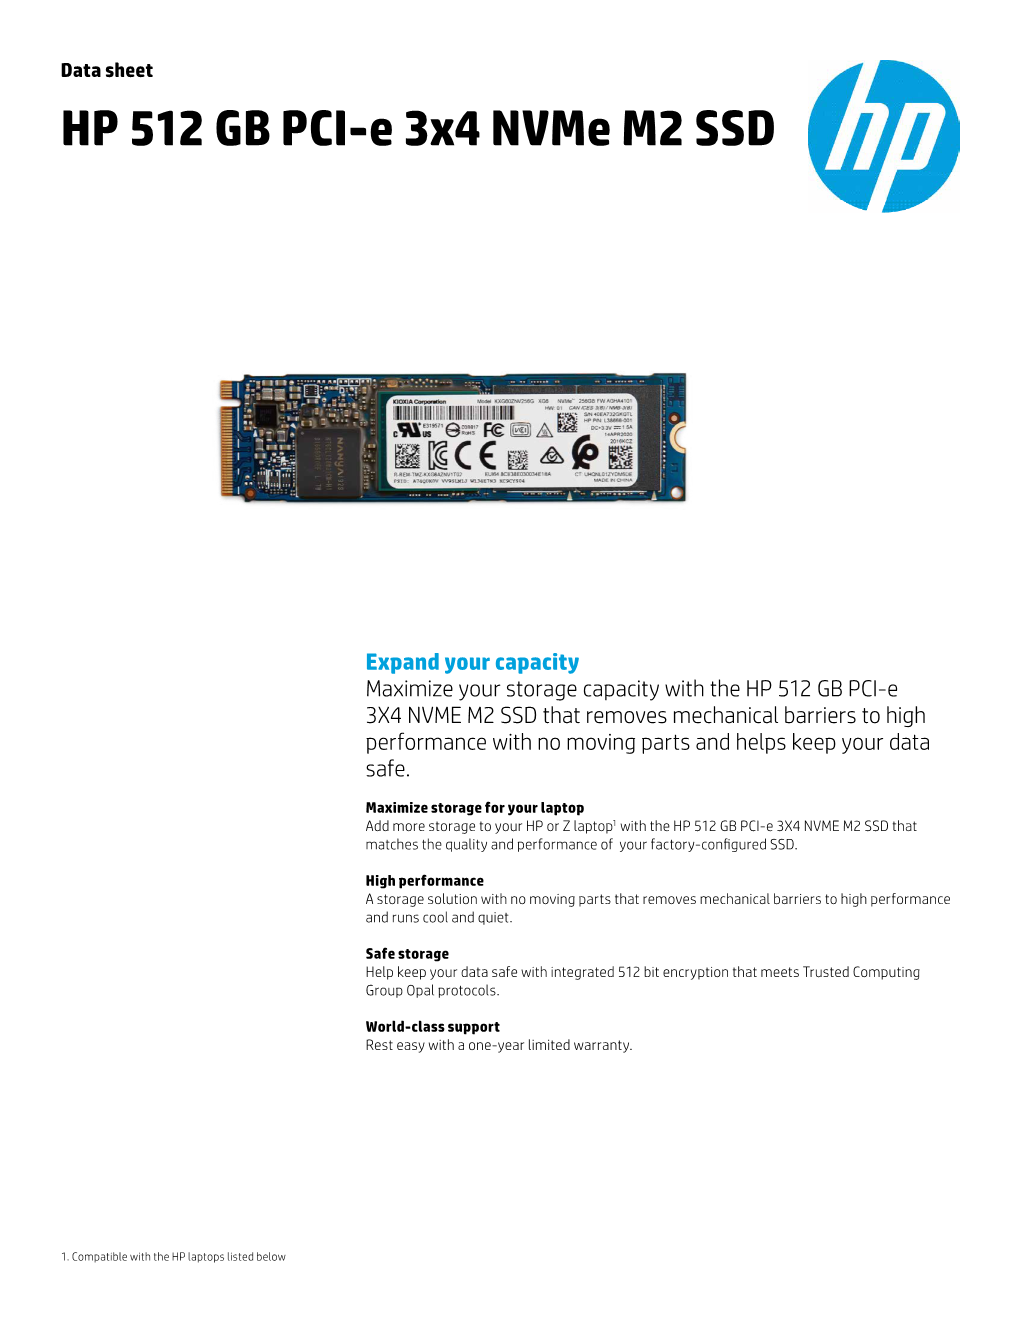 HP 512 GB PCI-E 3X4 Nvme M2 SSD